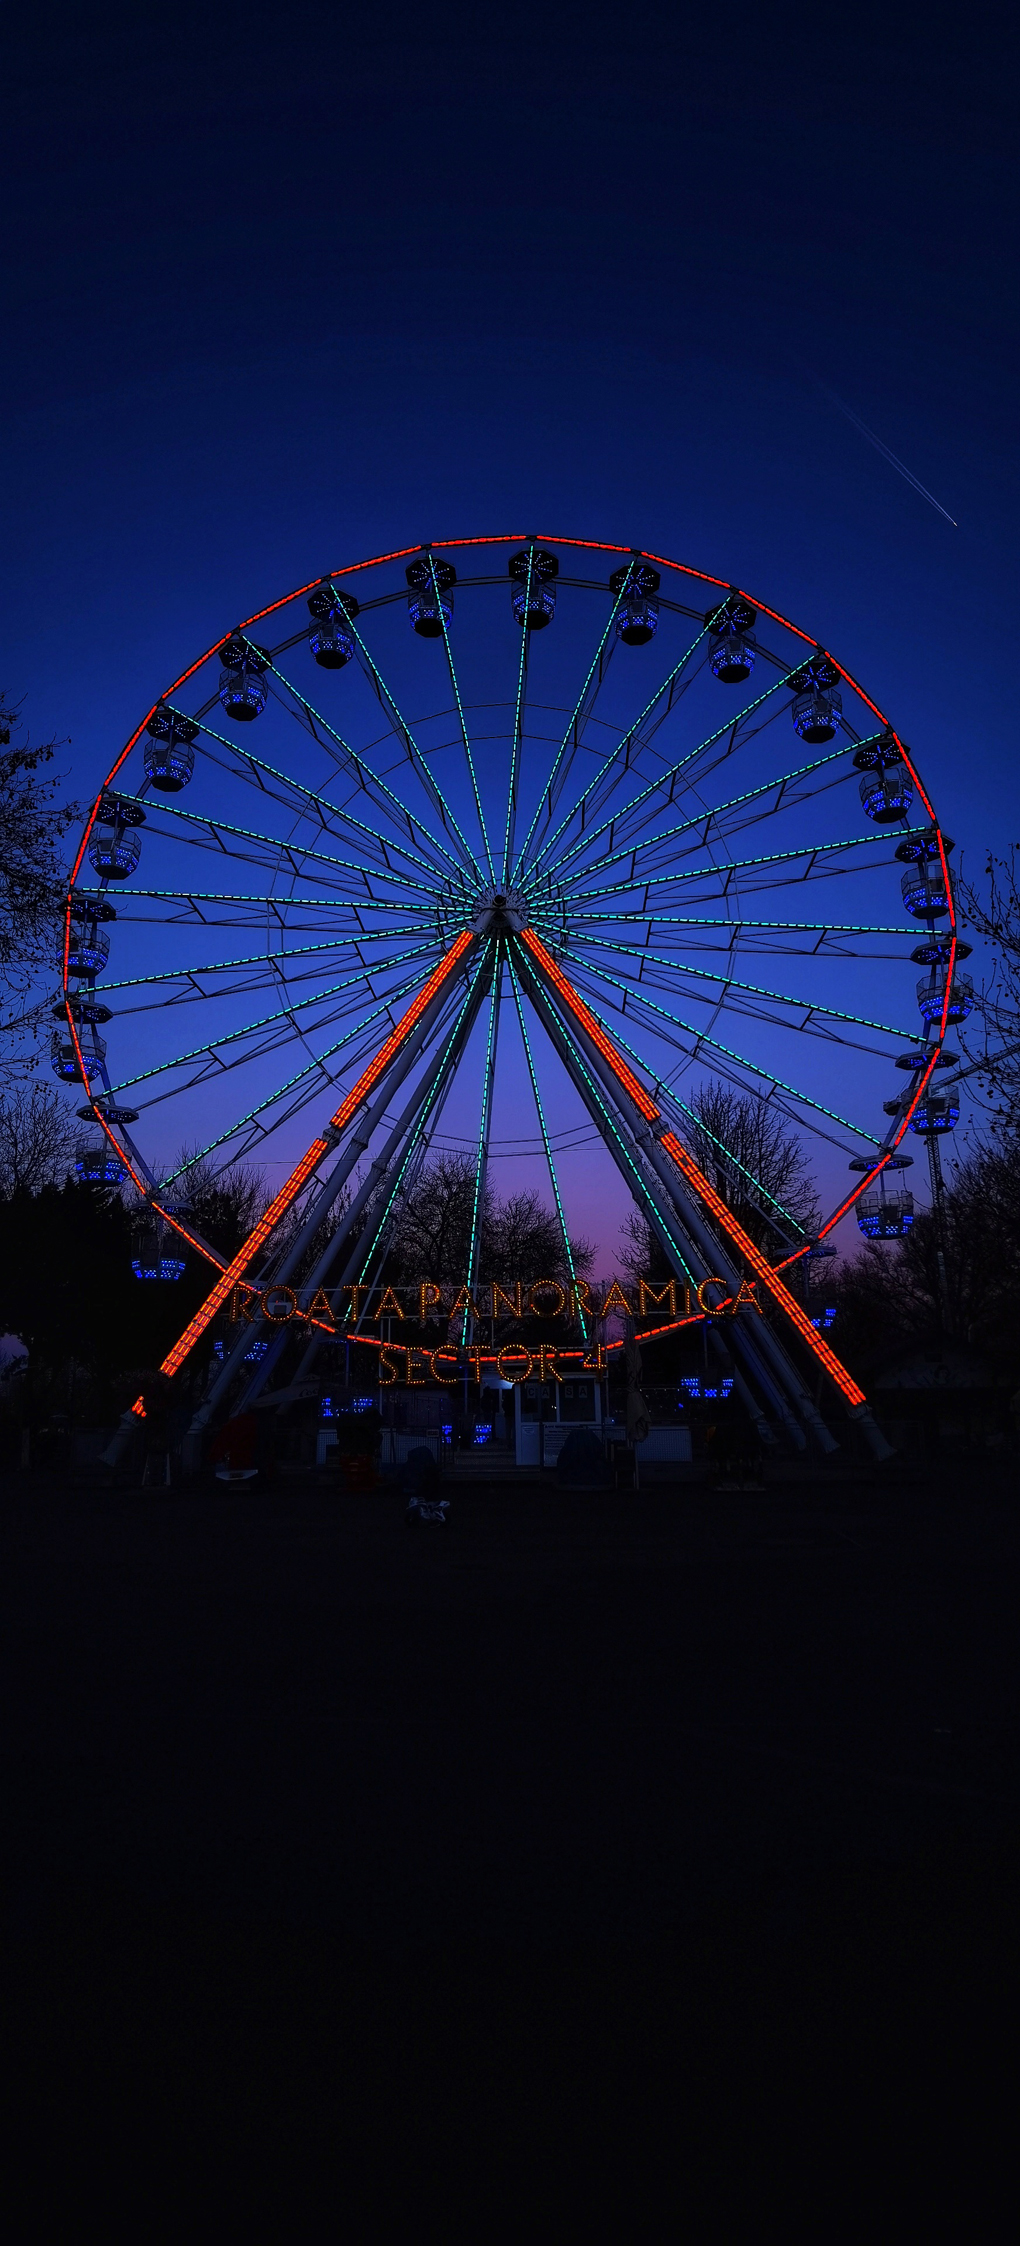 Lit up Ferris wheel in night sky